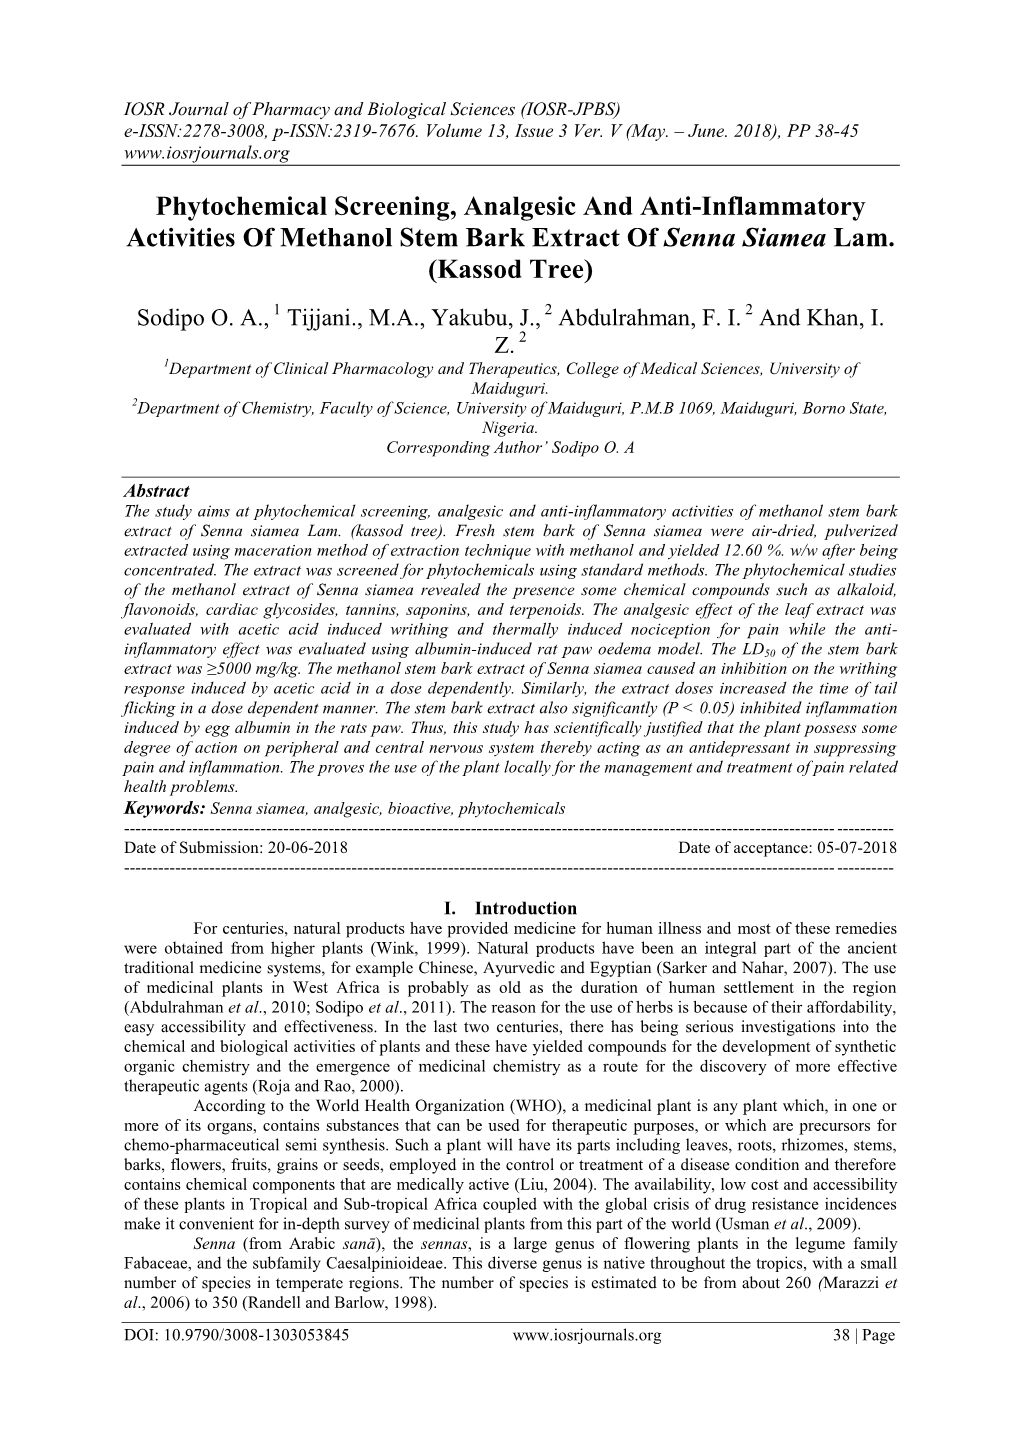 Phytochemical Screening, Analgesic and Anti-Inflammatory Activities of Methanol Stem Bark Extract of Senna Siamea Lam. (Kassod Tree)